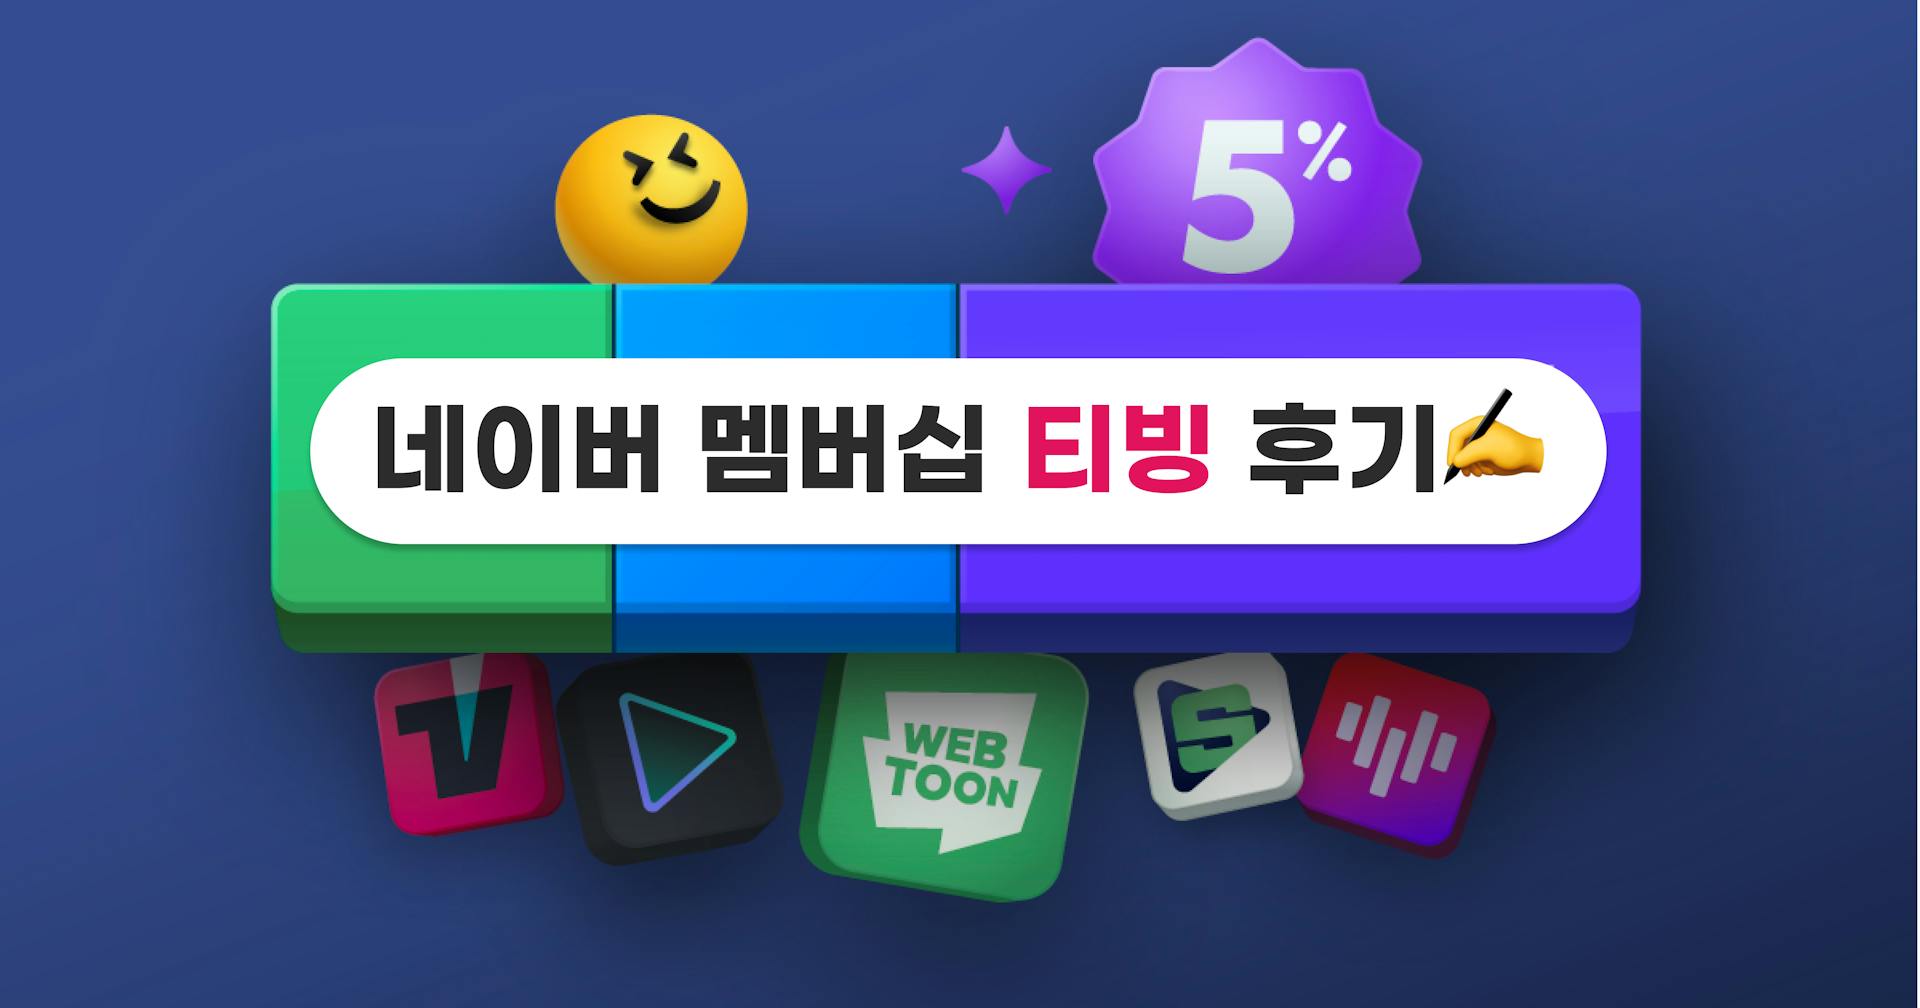 네이버 멤버십 티빙 후기 - 티빙 싸게 보려면 다른 할인 방법 추천!